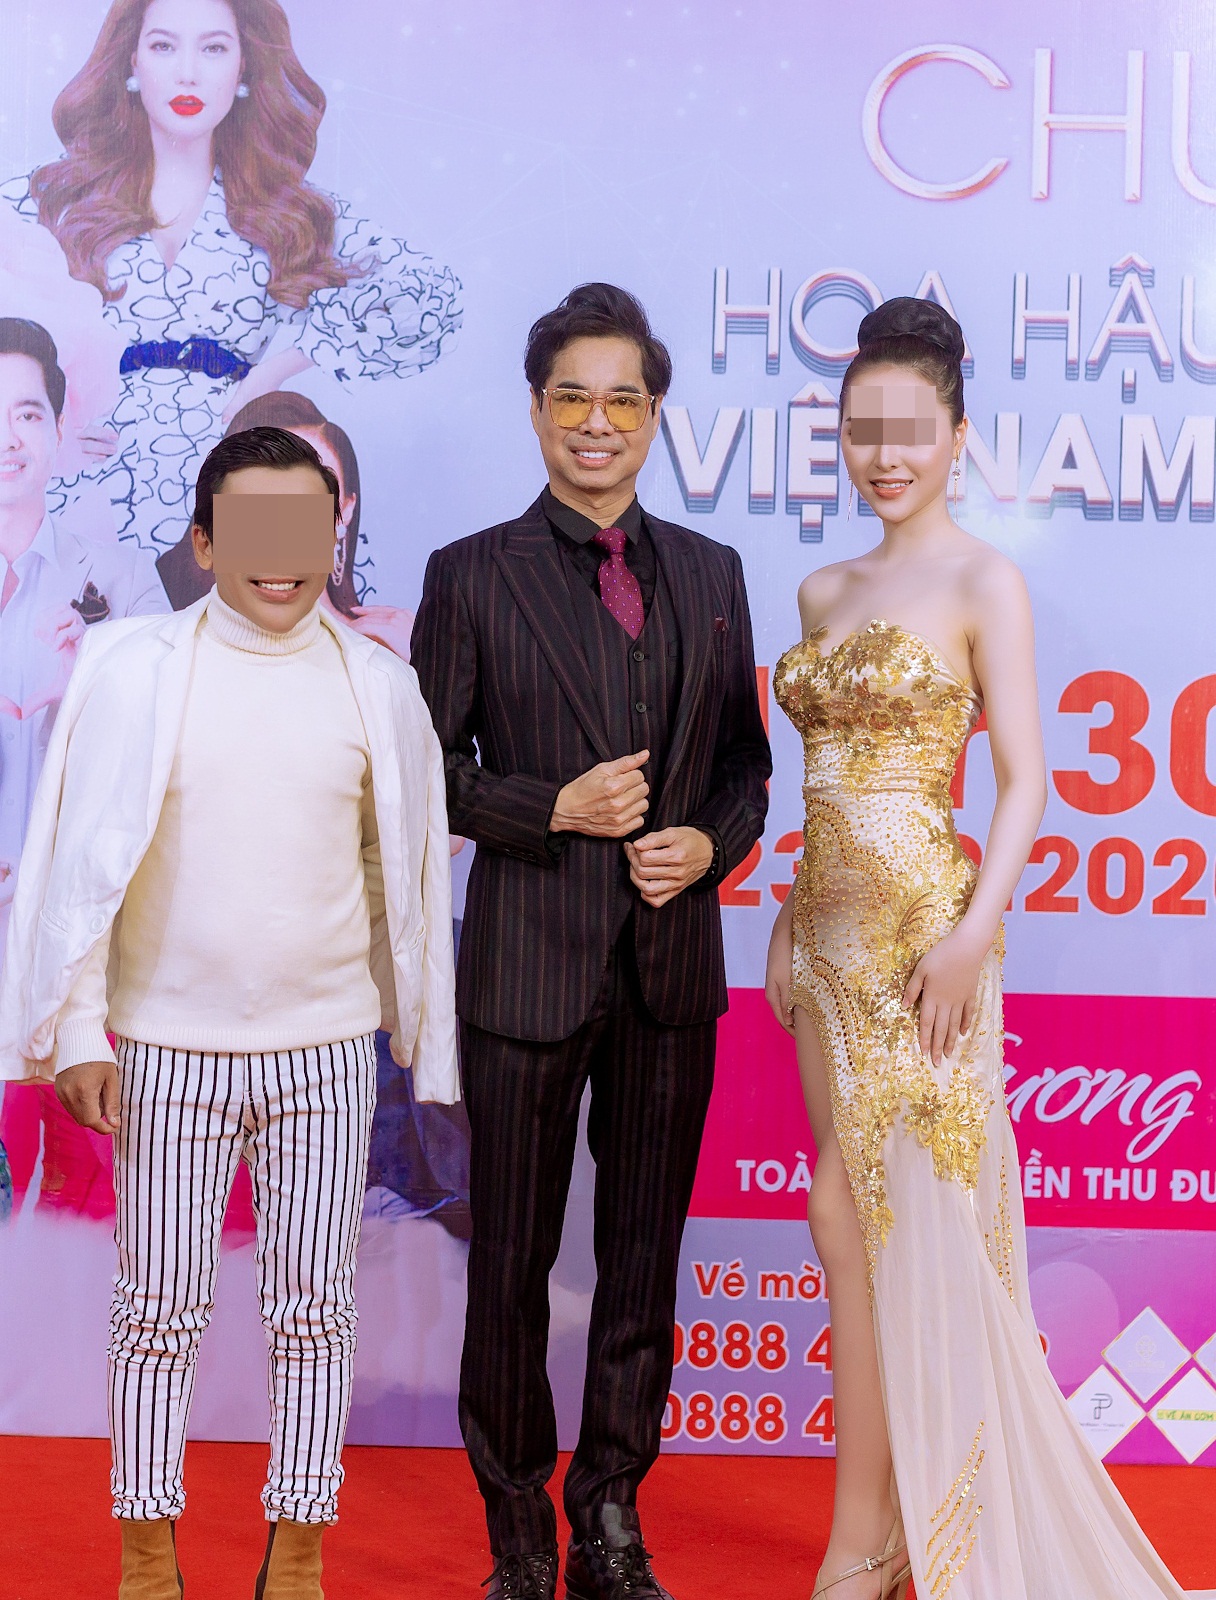 'Tiểu tam phố Lý Nam Đế' gây bất ngờ khi xuất hiện trong đêm chung kết một cuộc thi Hoa hậu 5